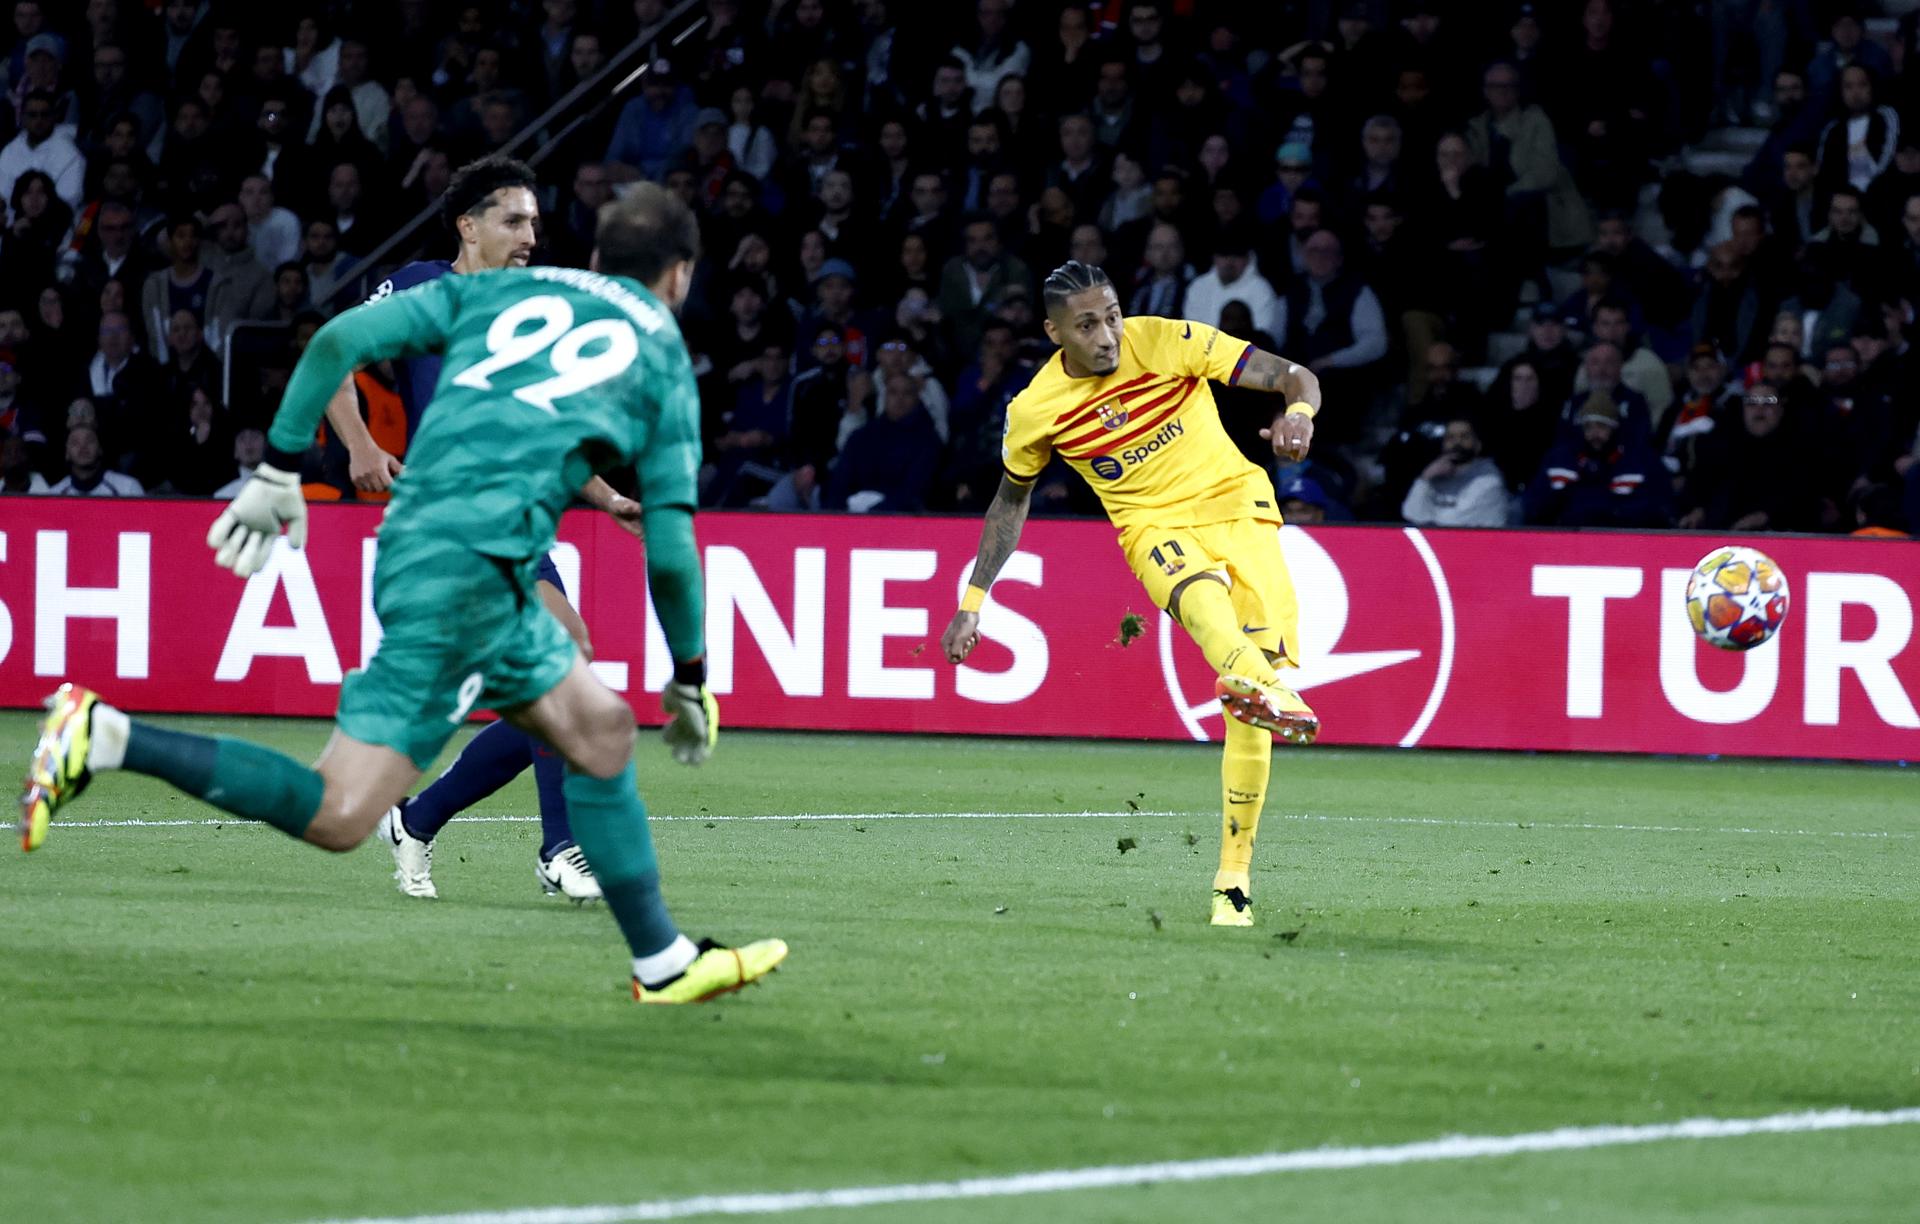 El jugador del Barcelona Raphinha (d) anotó el gol inicial durante los cuartos de final de la Liga de Campeones entre Paris Saint-Germain y FC Barcelona, en París, Francia. EFE/EPA/MOHAMMED BADRA
